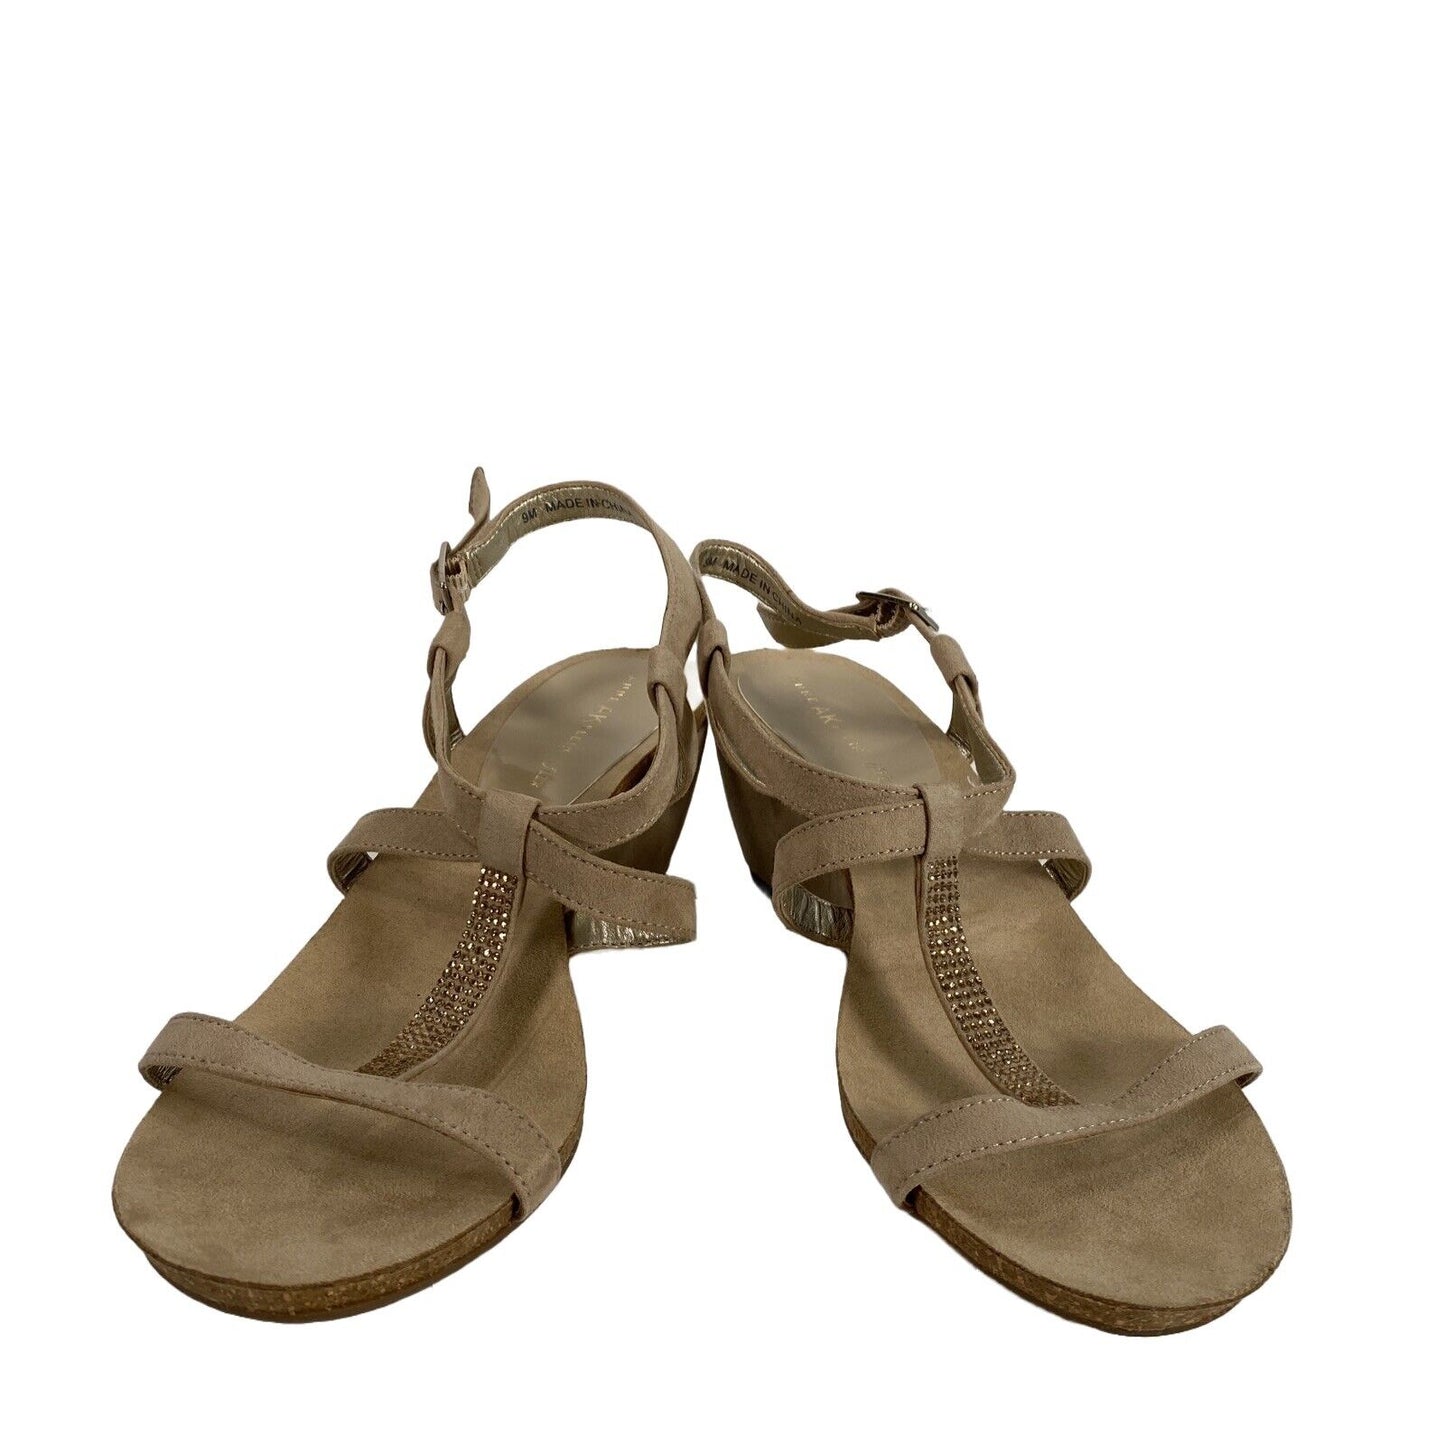 Anne Klein Women's Beige iflex Rhinestone Slingback Sandals - 9M